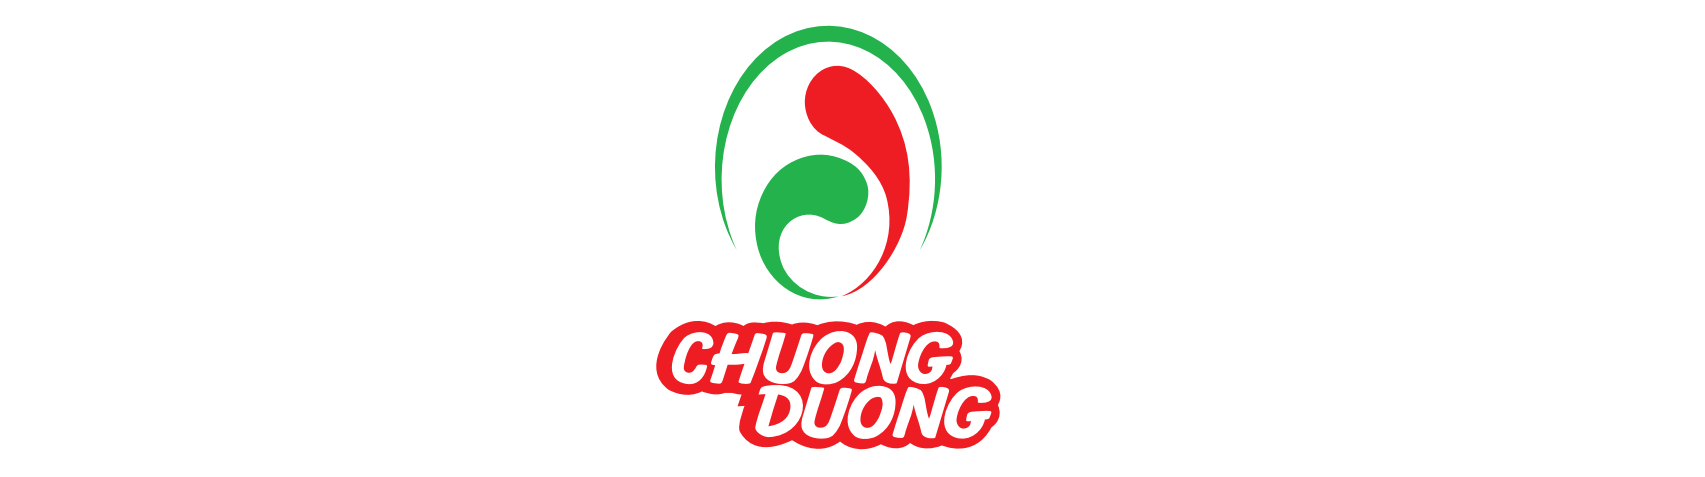 chuongduong